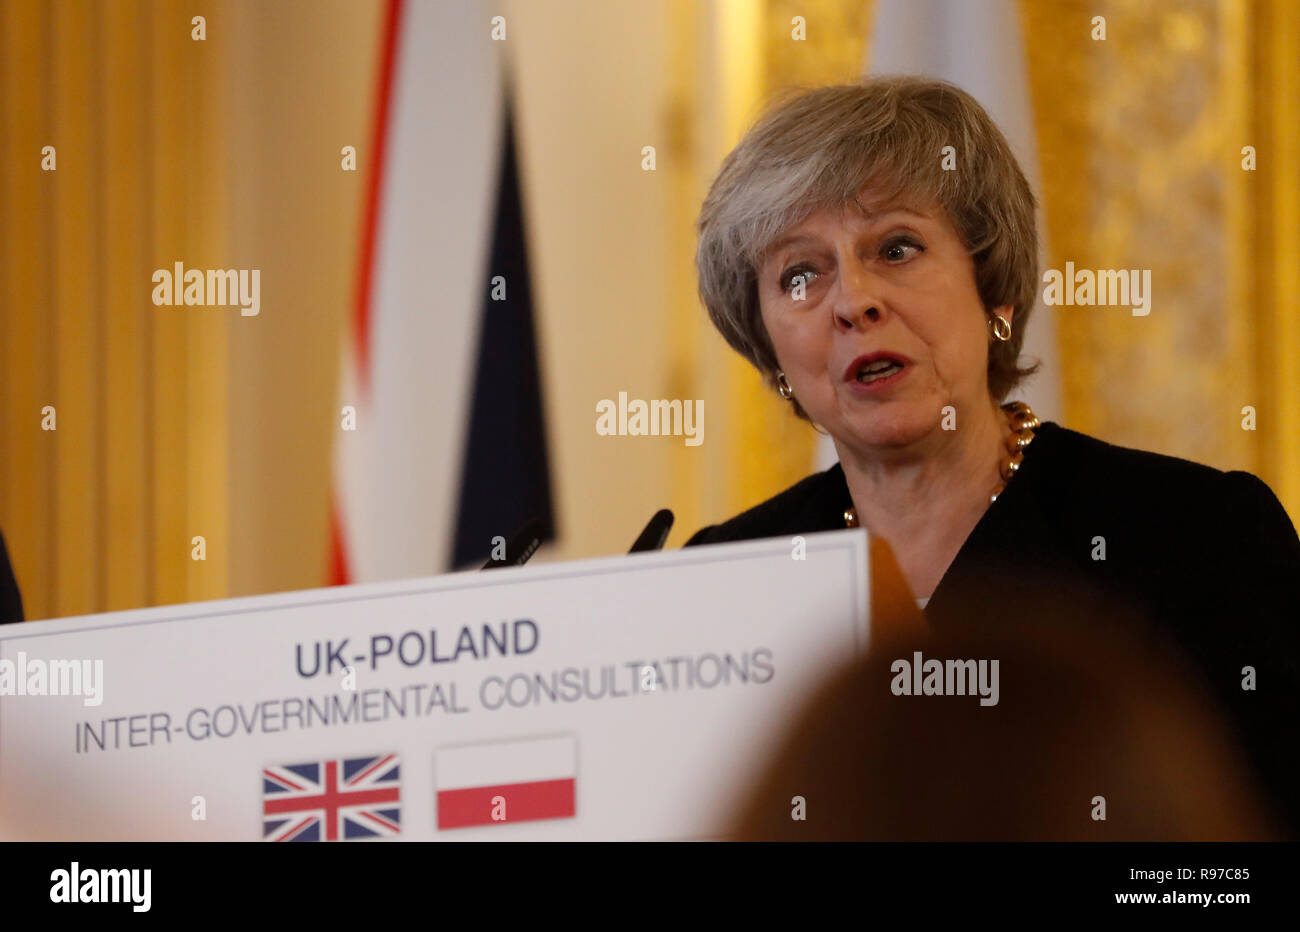 El Primer Ministro Teresa mayo durante una conferencia de prensa tras la UK-Polonia consultas intergubernamentales en Lancaster House, Londres. Foto de stock